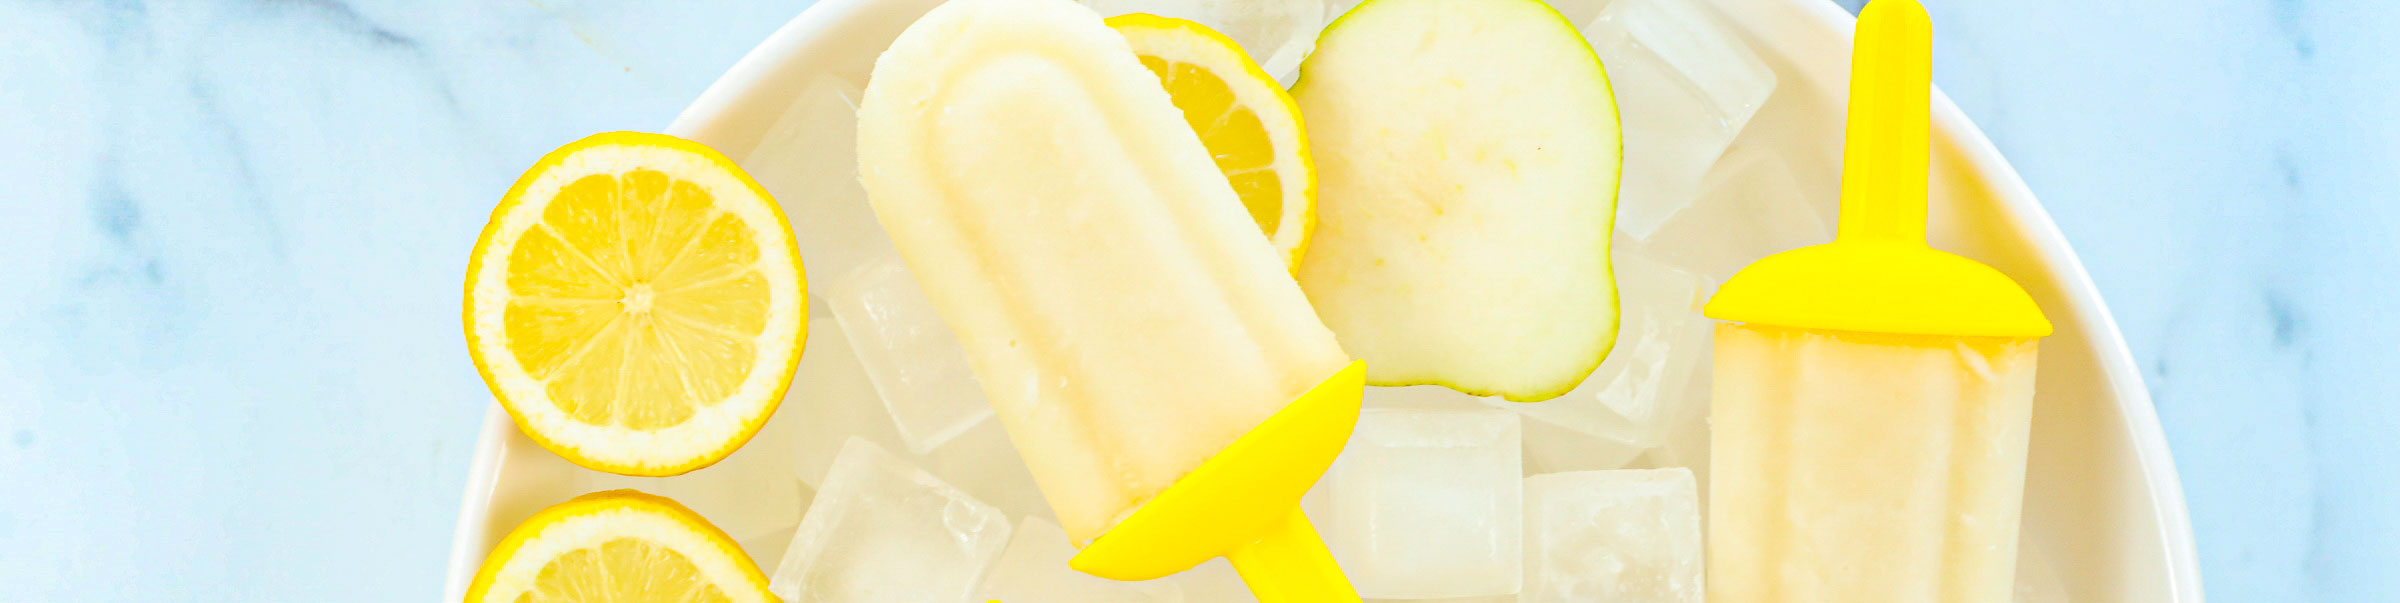 Pear Lemon Popsicles